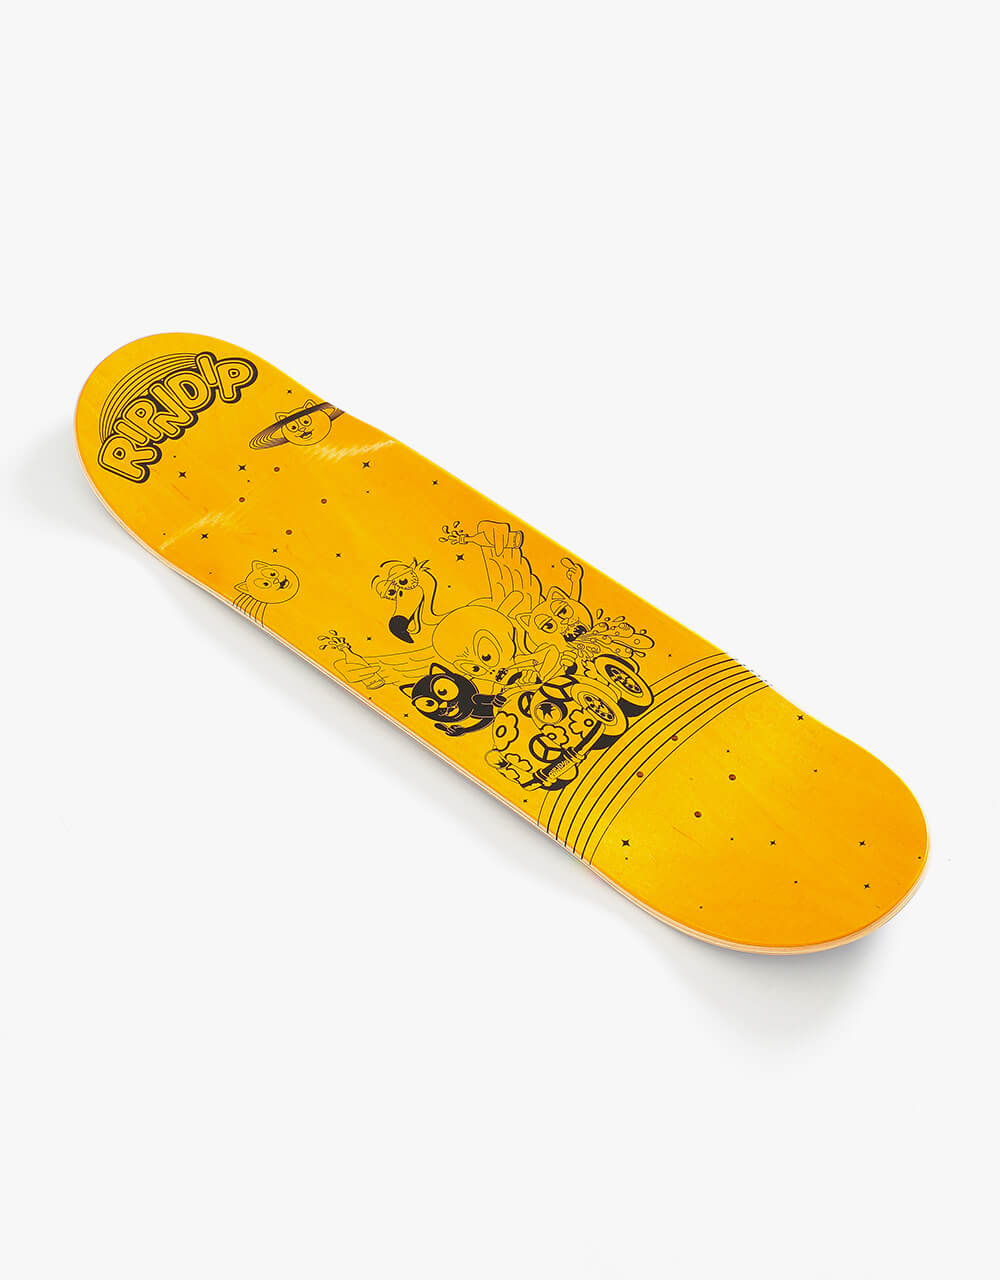 RIPNDIP Hell Racer Skateboard Deck -  8.5"